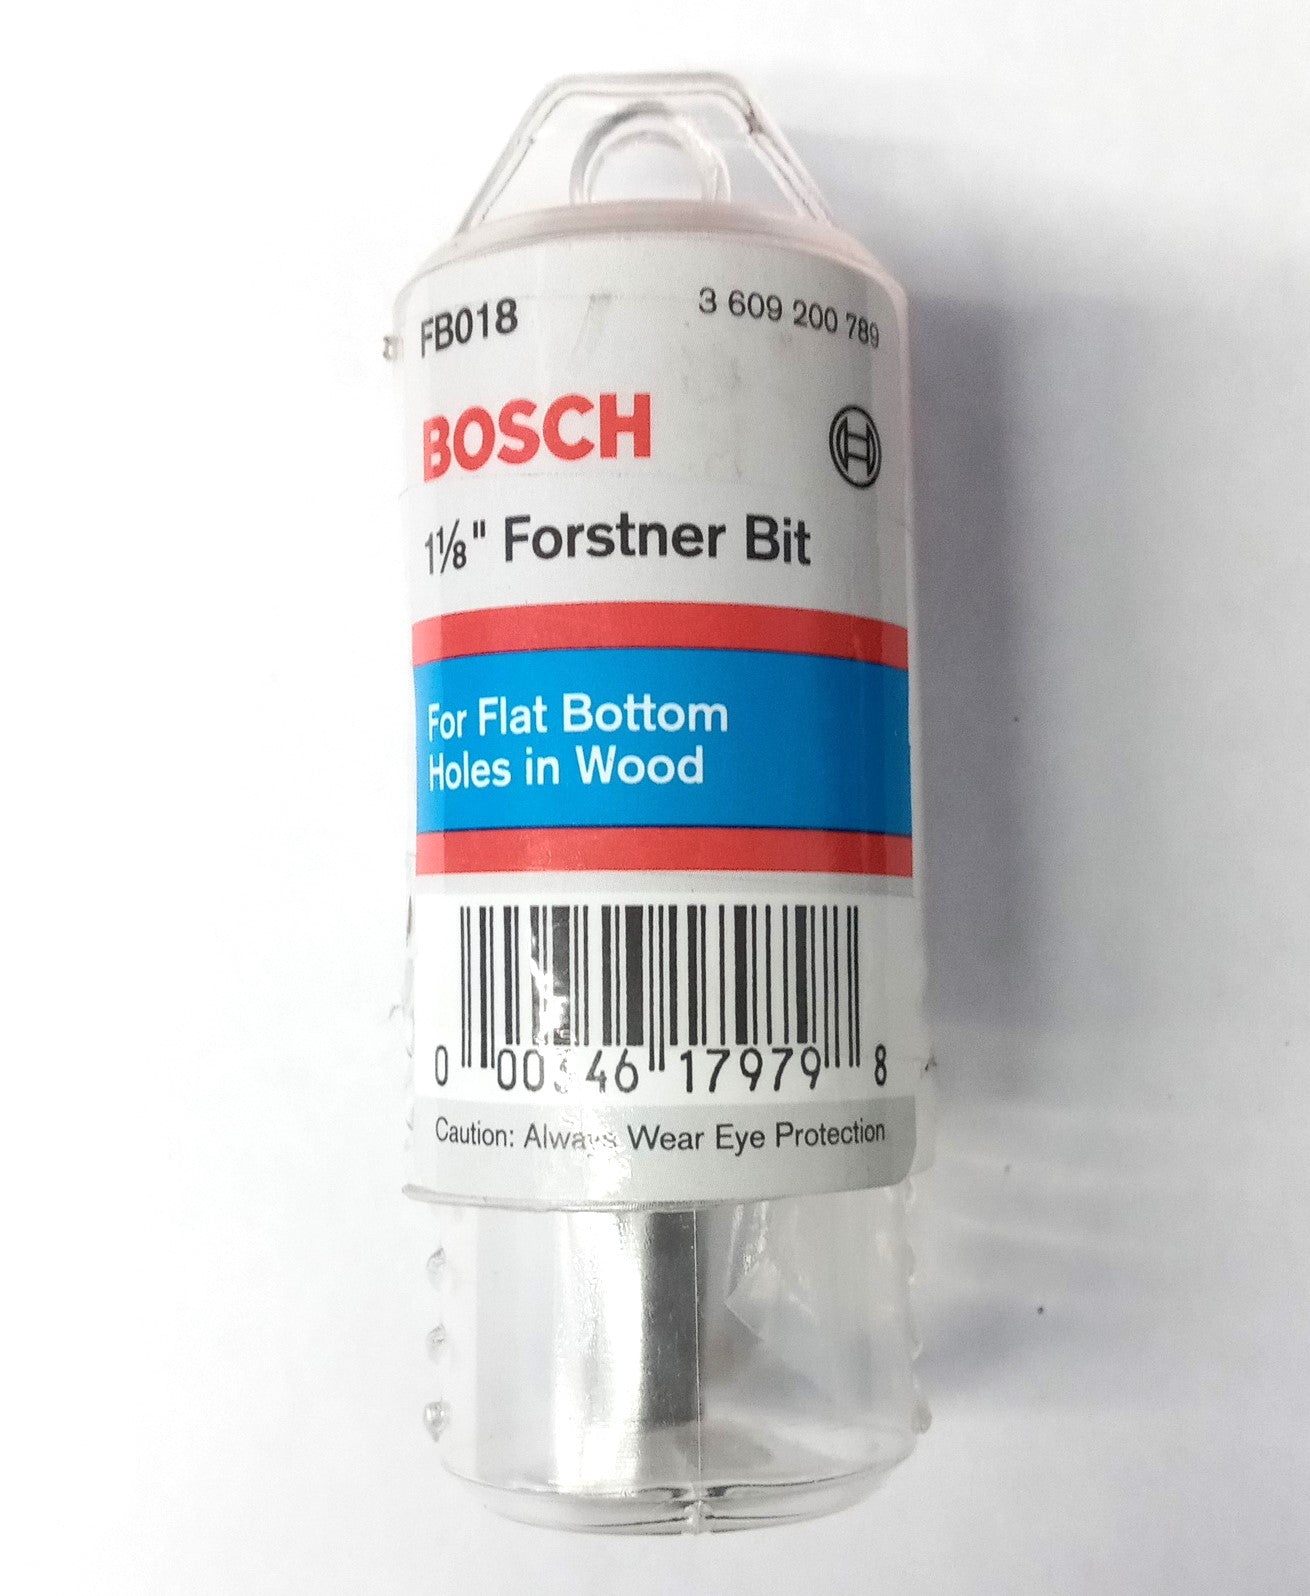 Bosch FB018 1-1/8" Forstner Bit 3/8" Shank